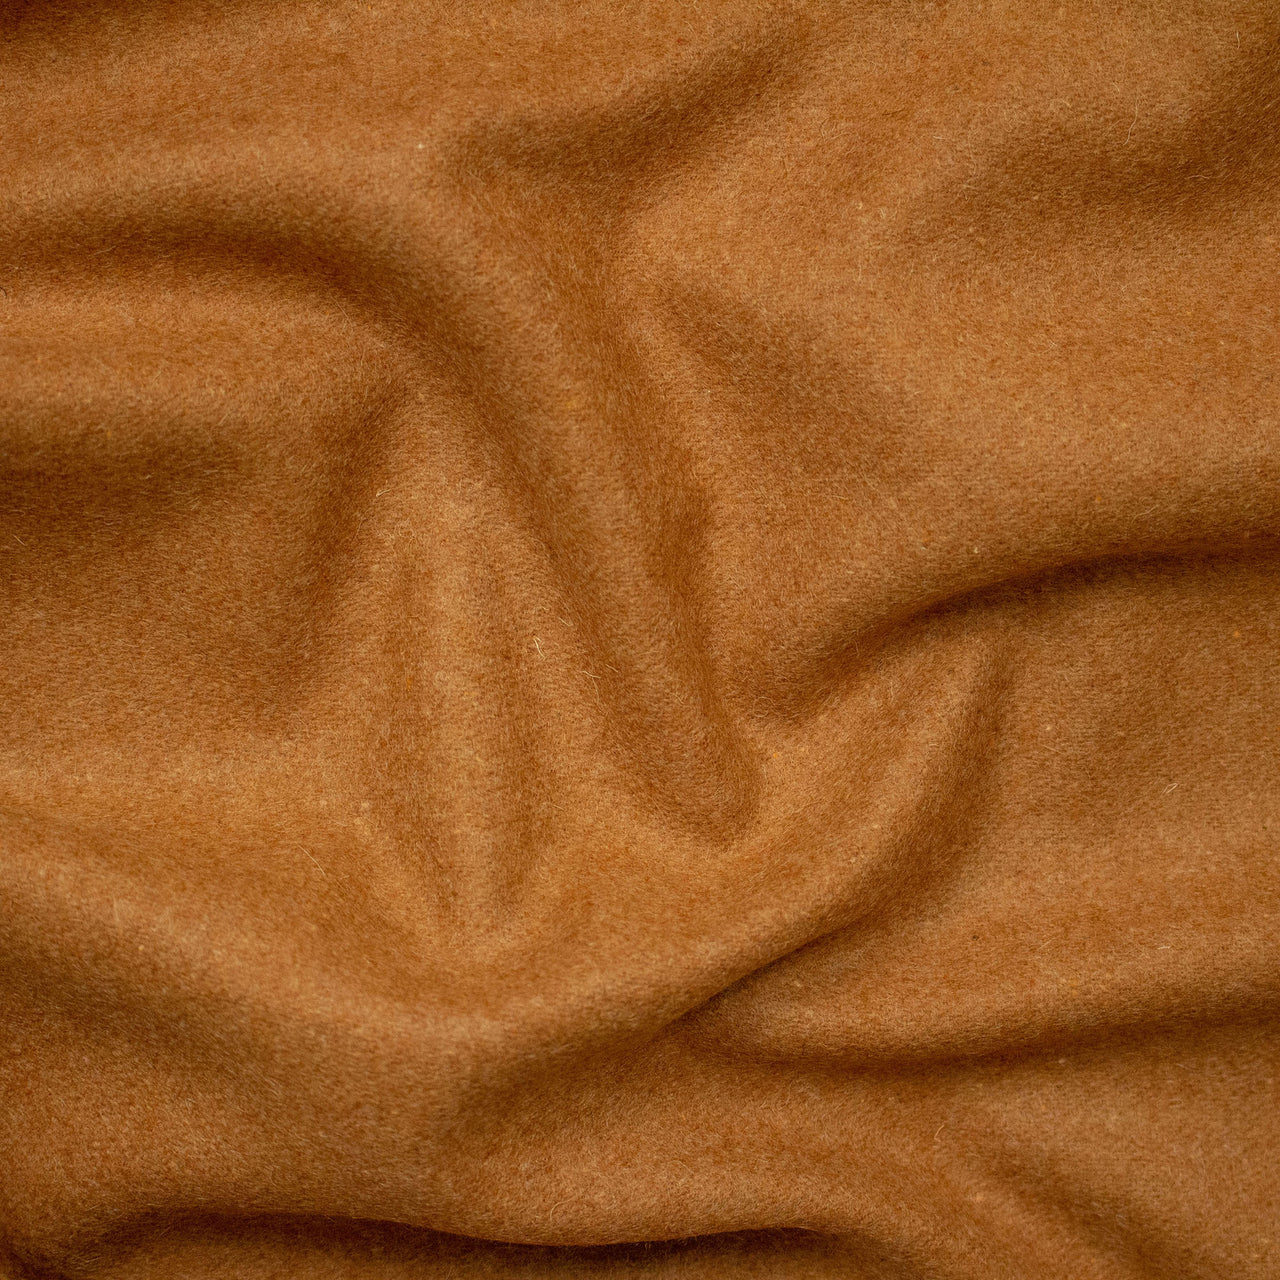 Camel - Tissu en laine Melton - Tissu doux et chaud pour manteaux, vêtements et couvertures